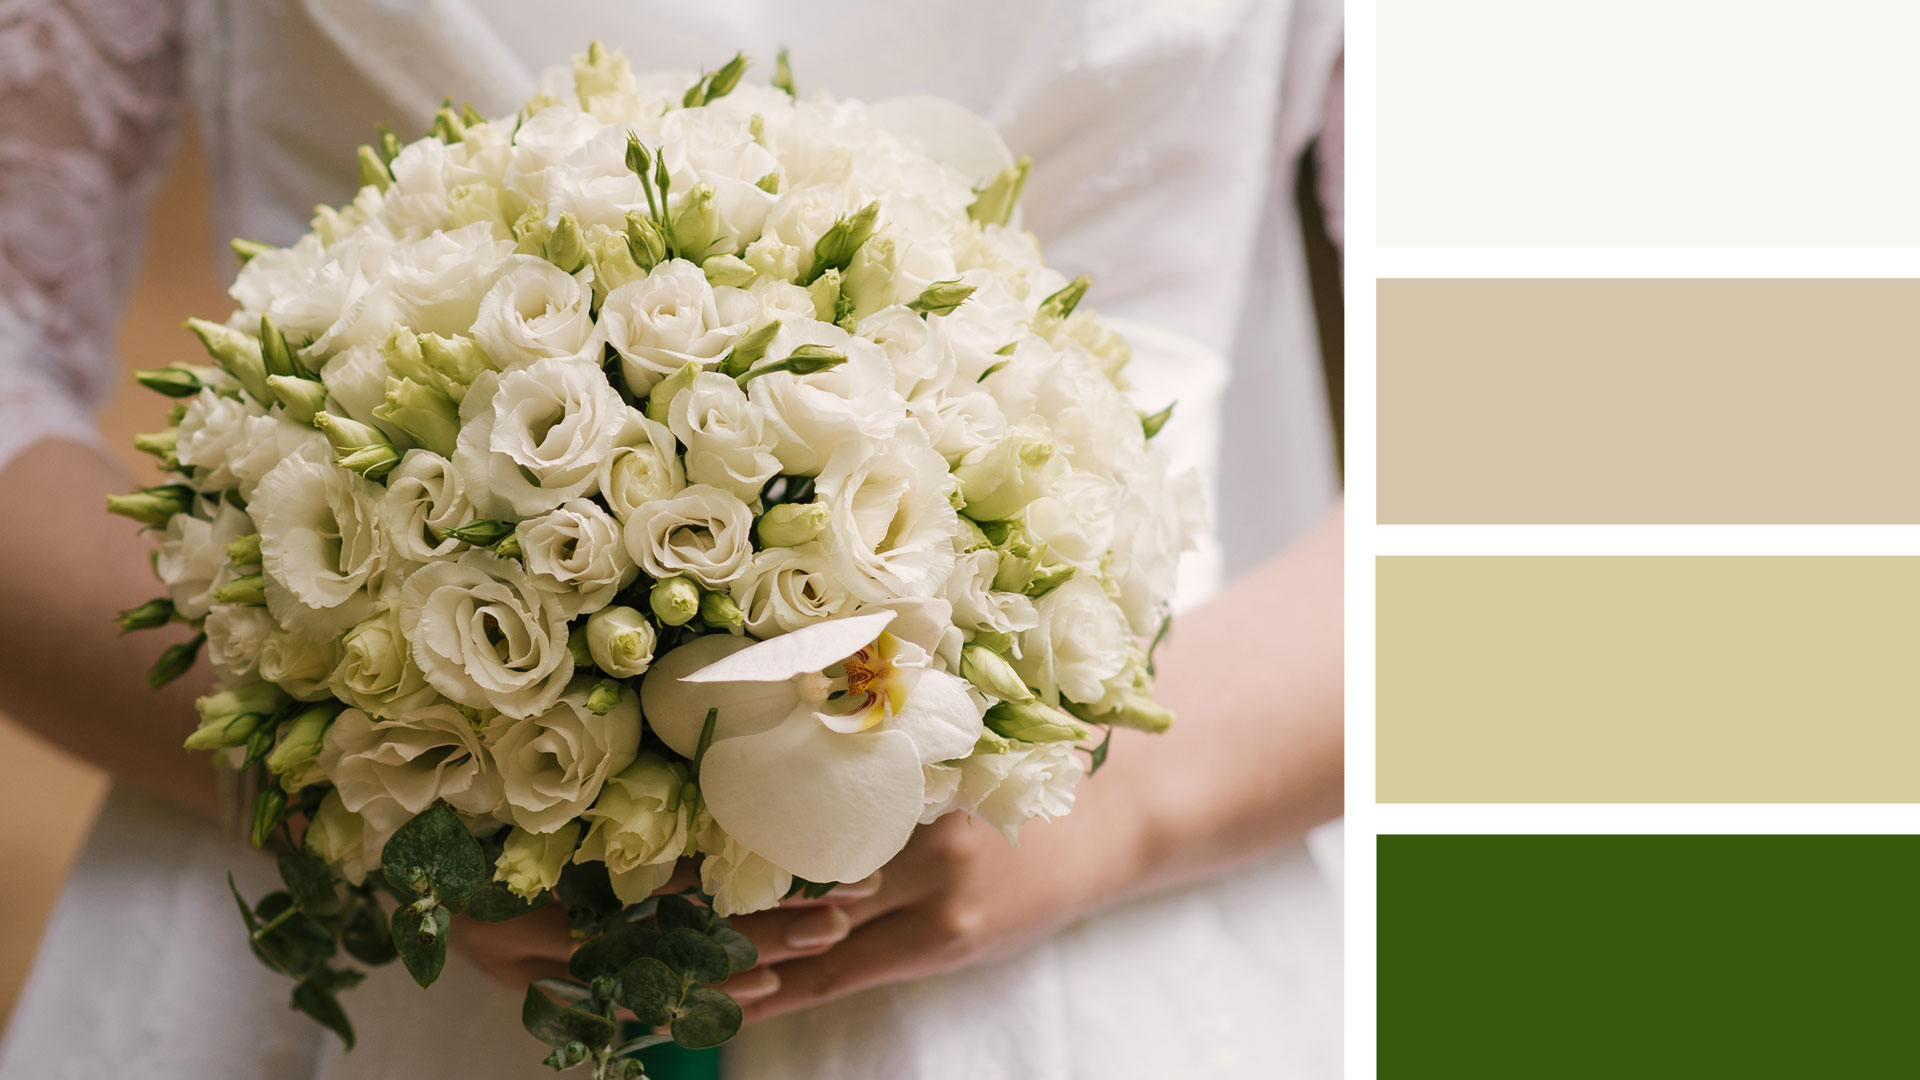 Рецепт свадебного букета круглой формы. Палитра: белый, зеленый.